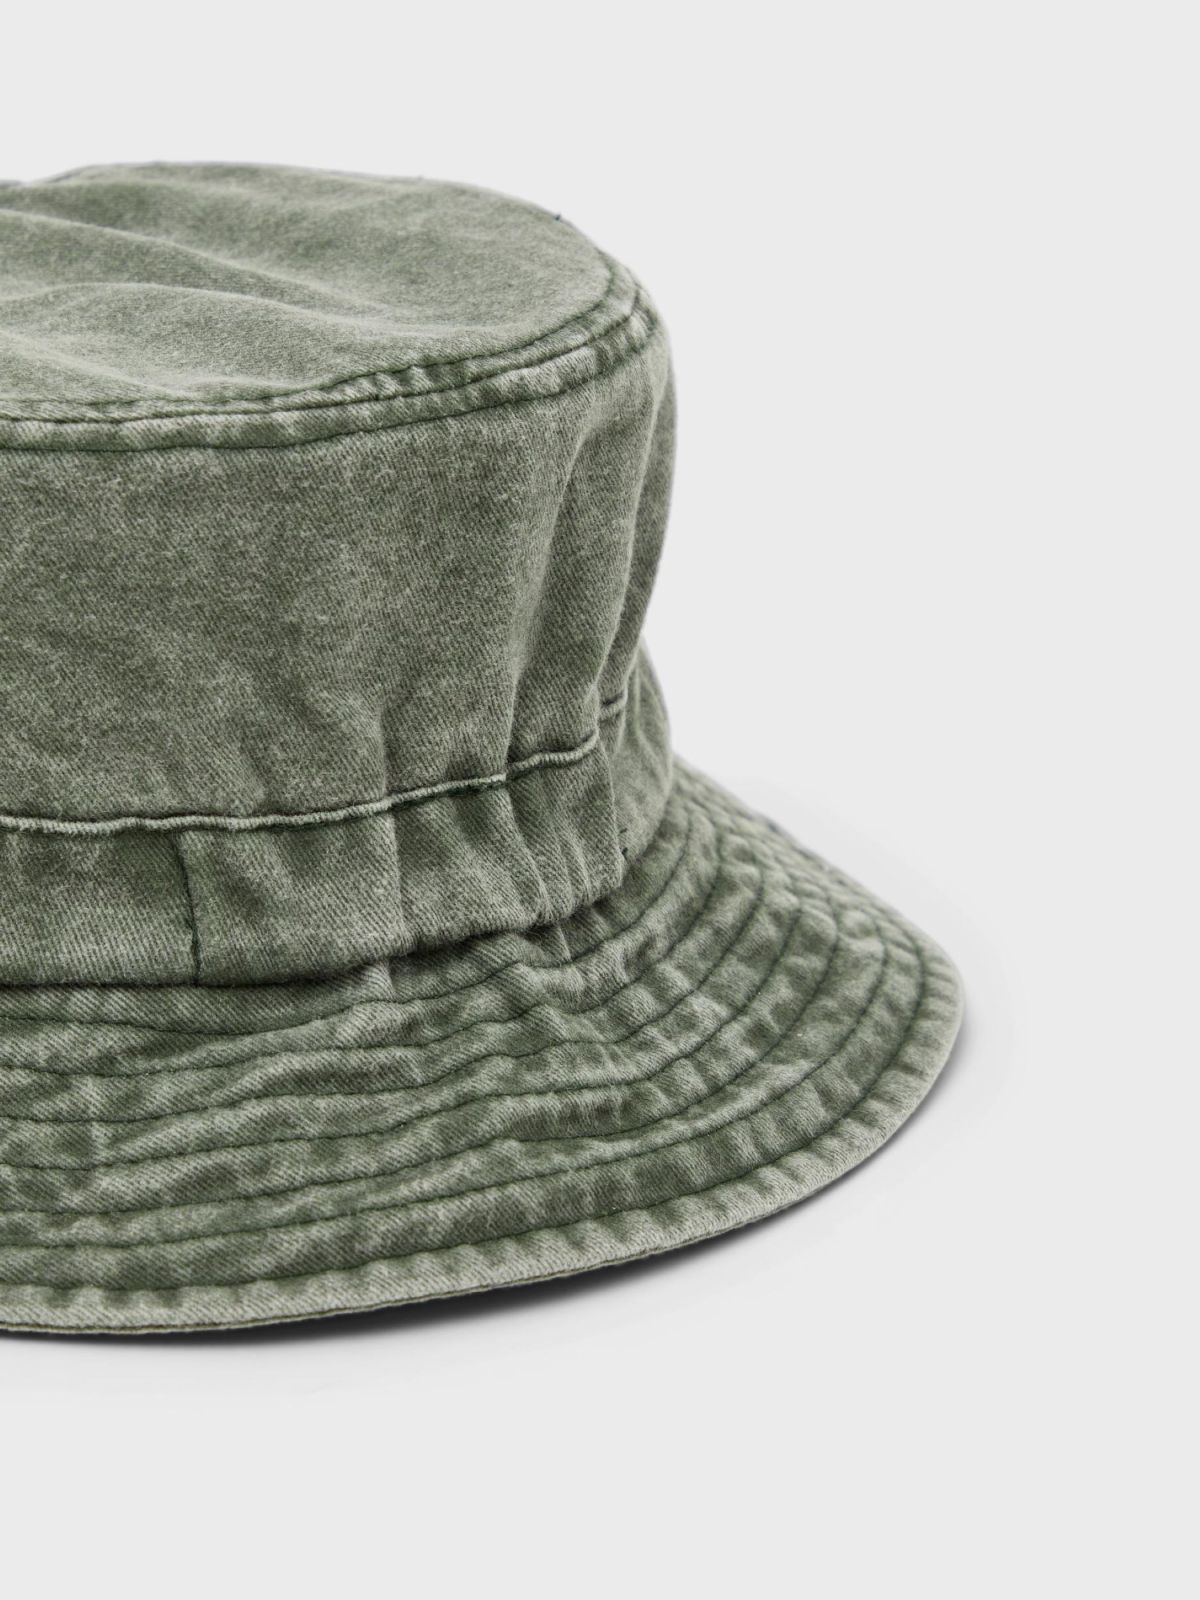  כובע באקט ג'ינס ווש / בנים של NAME IT